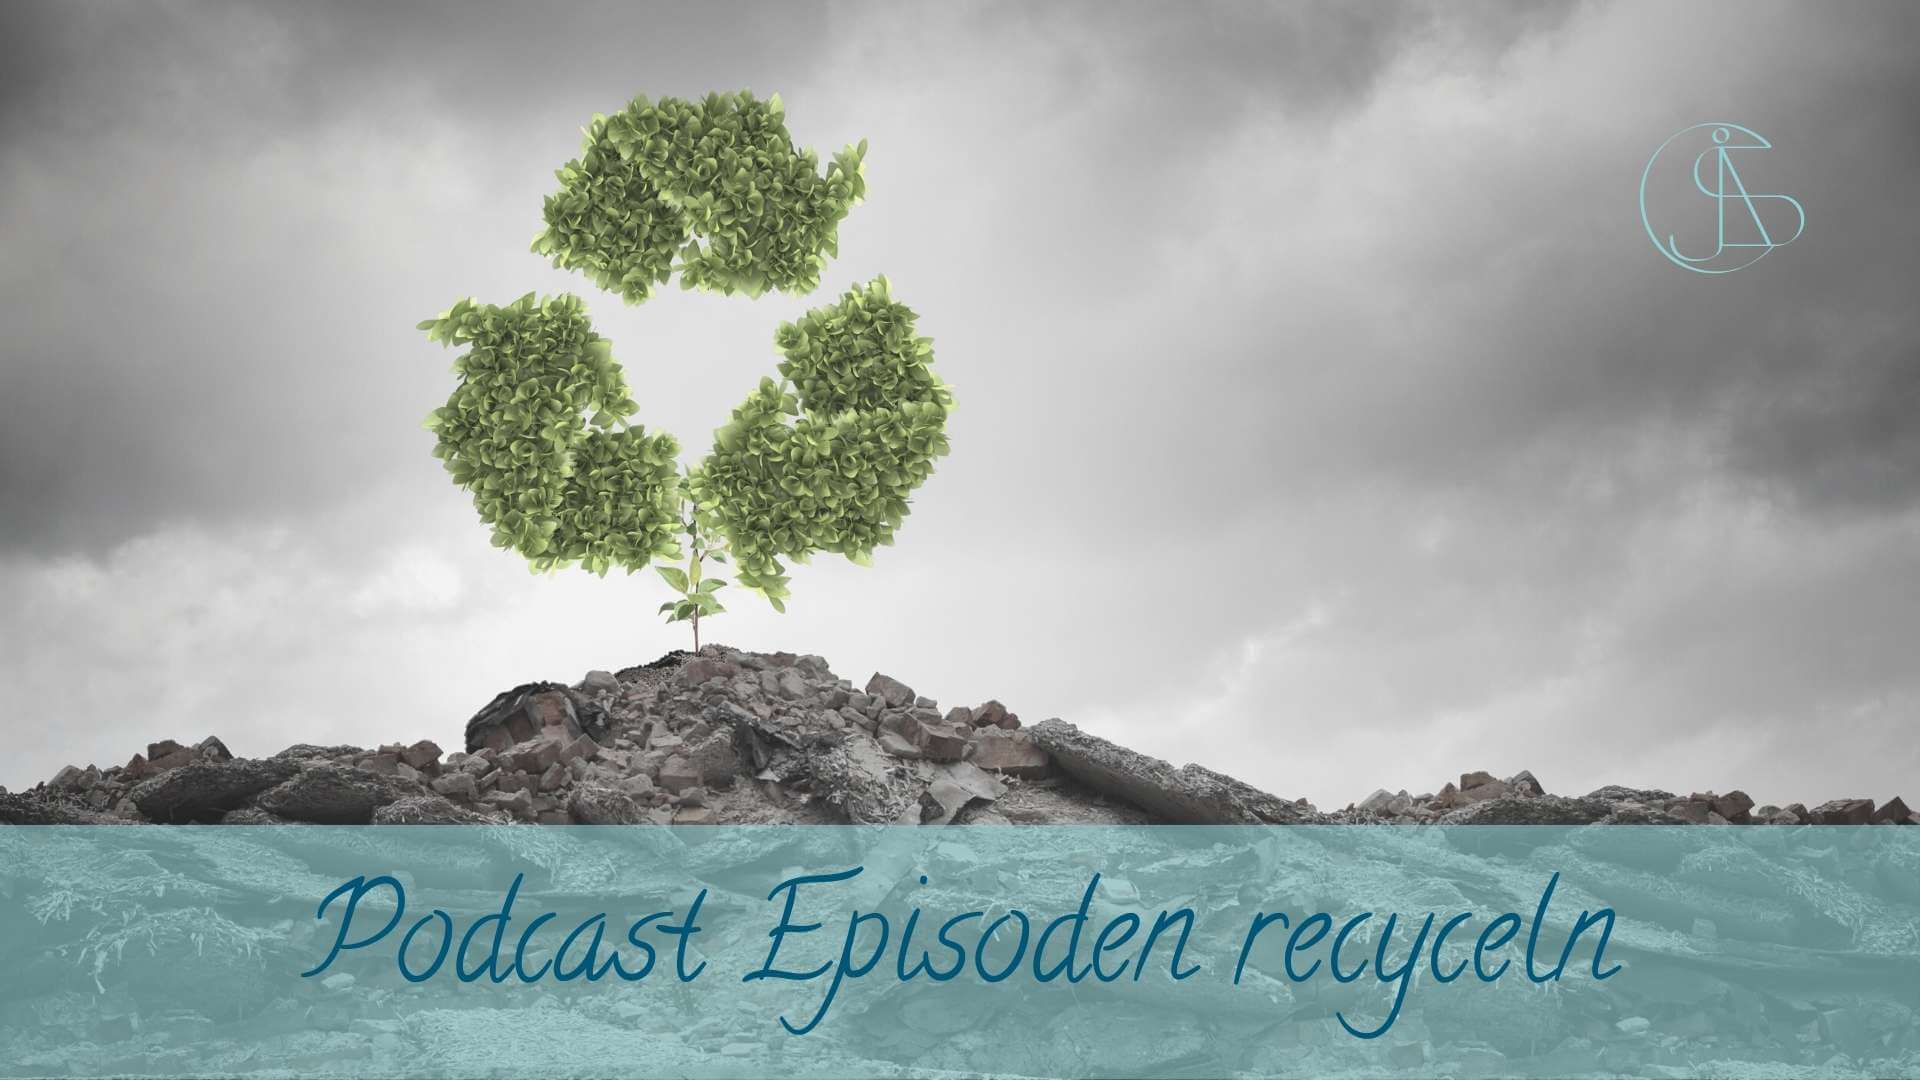 Blog Podcast Episoden recyceln: Berg aus Steinen mit einem Baum als Recyclingzeichen